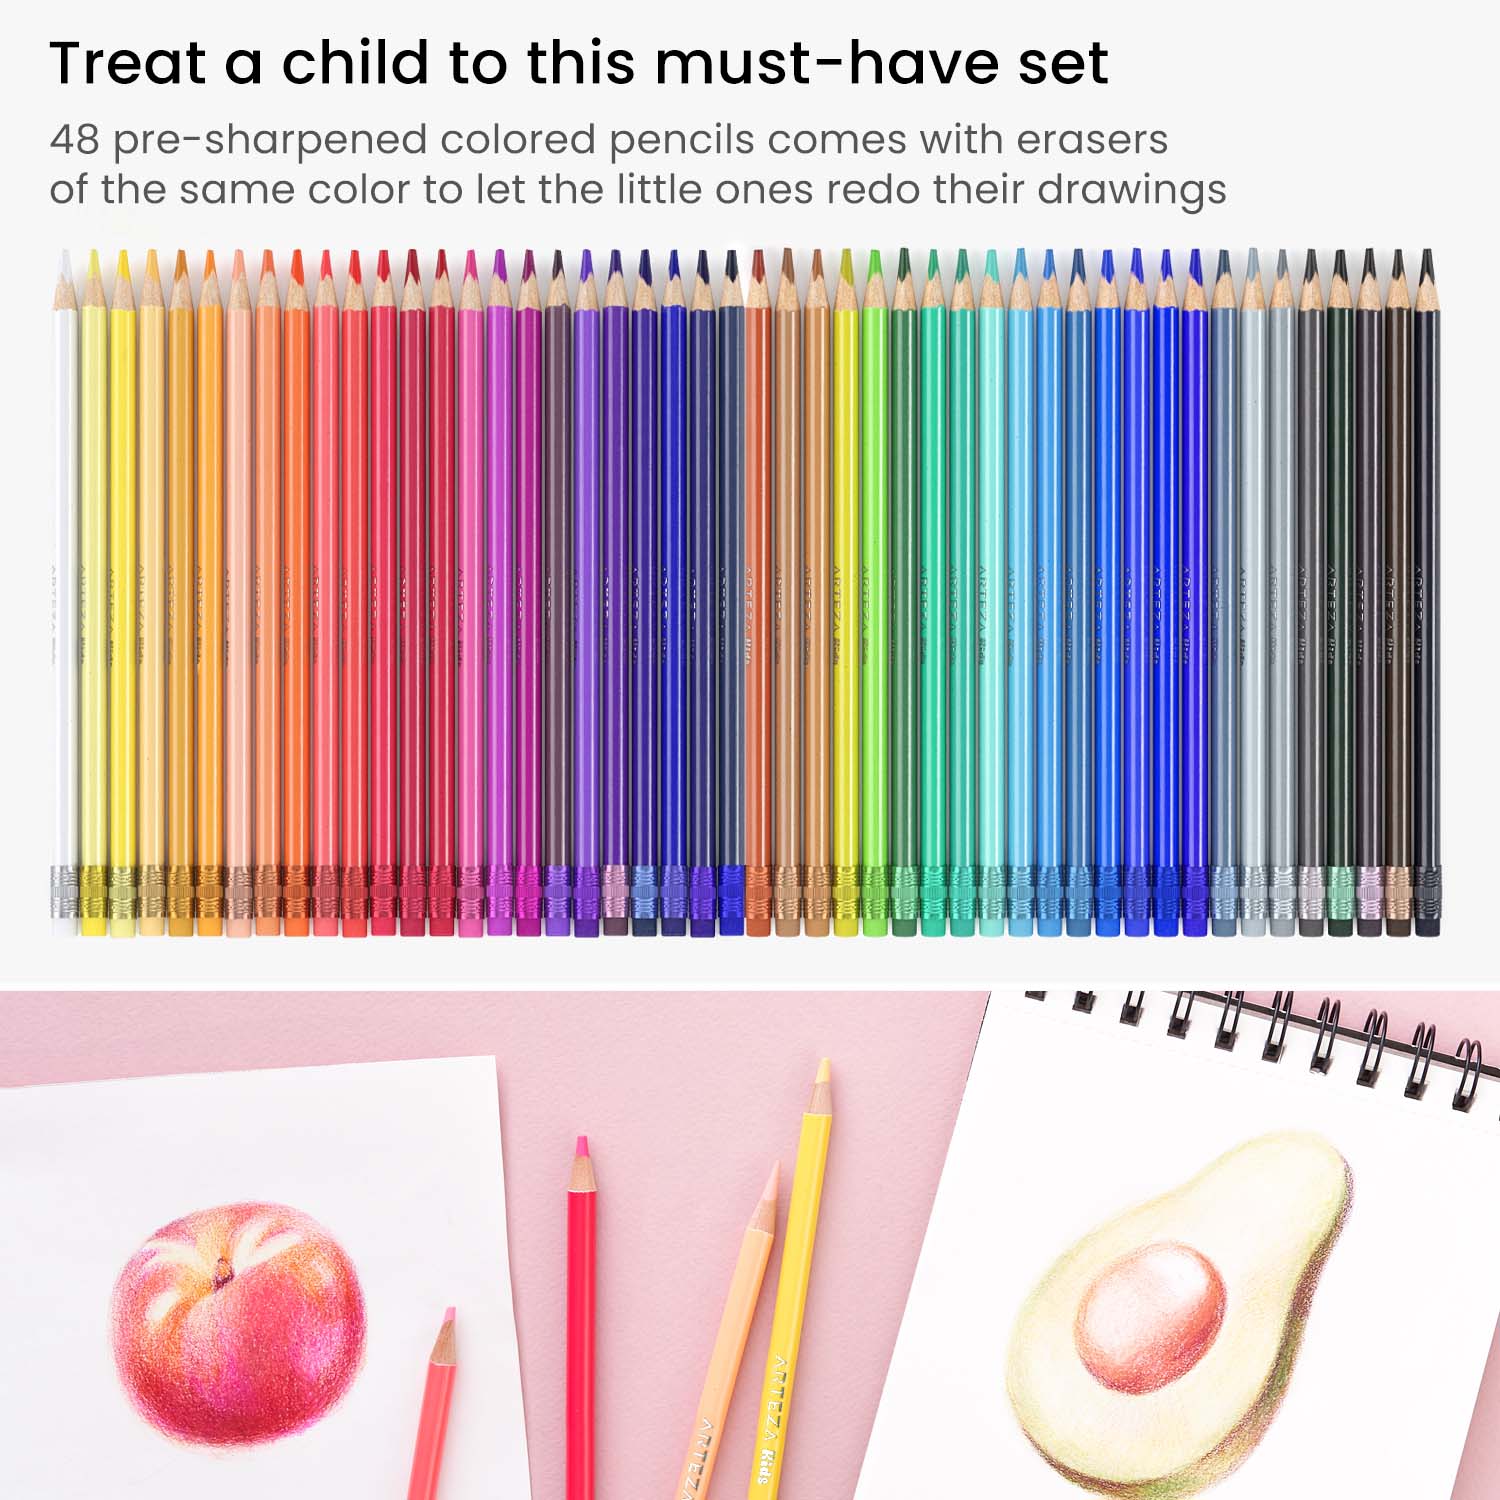 https://arteza.com/cdn/shop/products/kids-erasable-colored-pencils-set-of-48_ju2Y4676.jpg?v=1652894241&width=1946